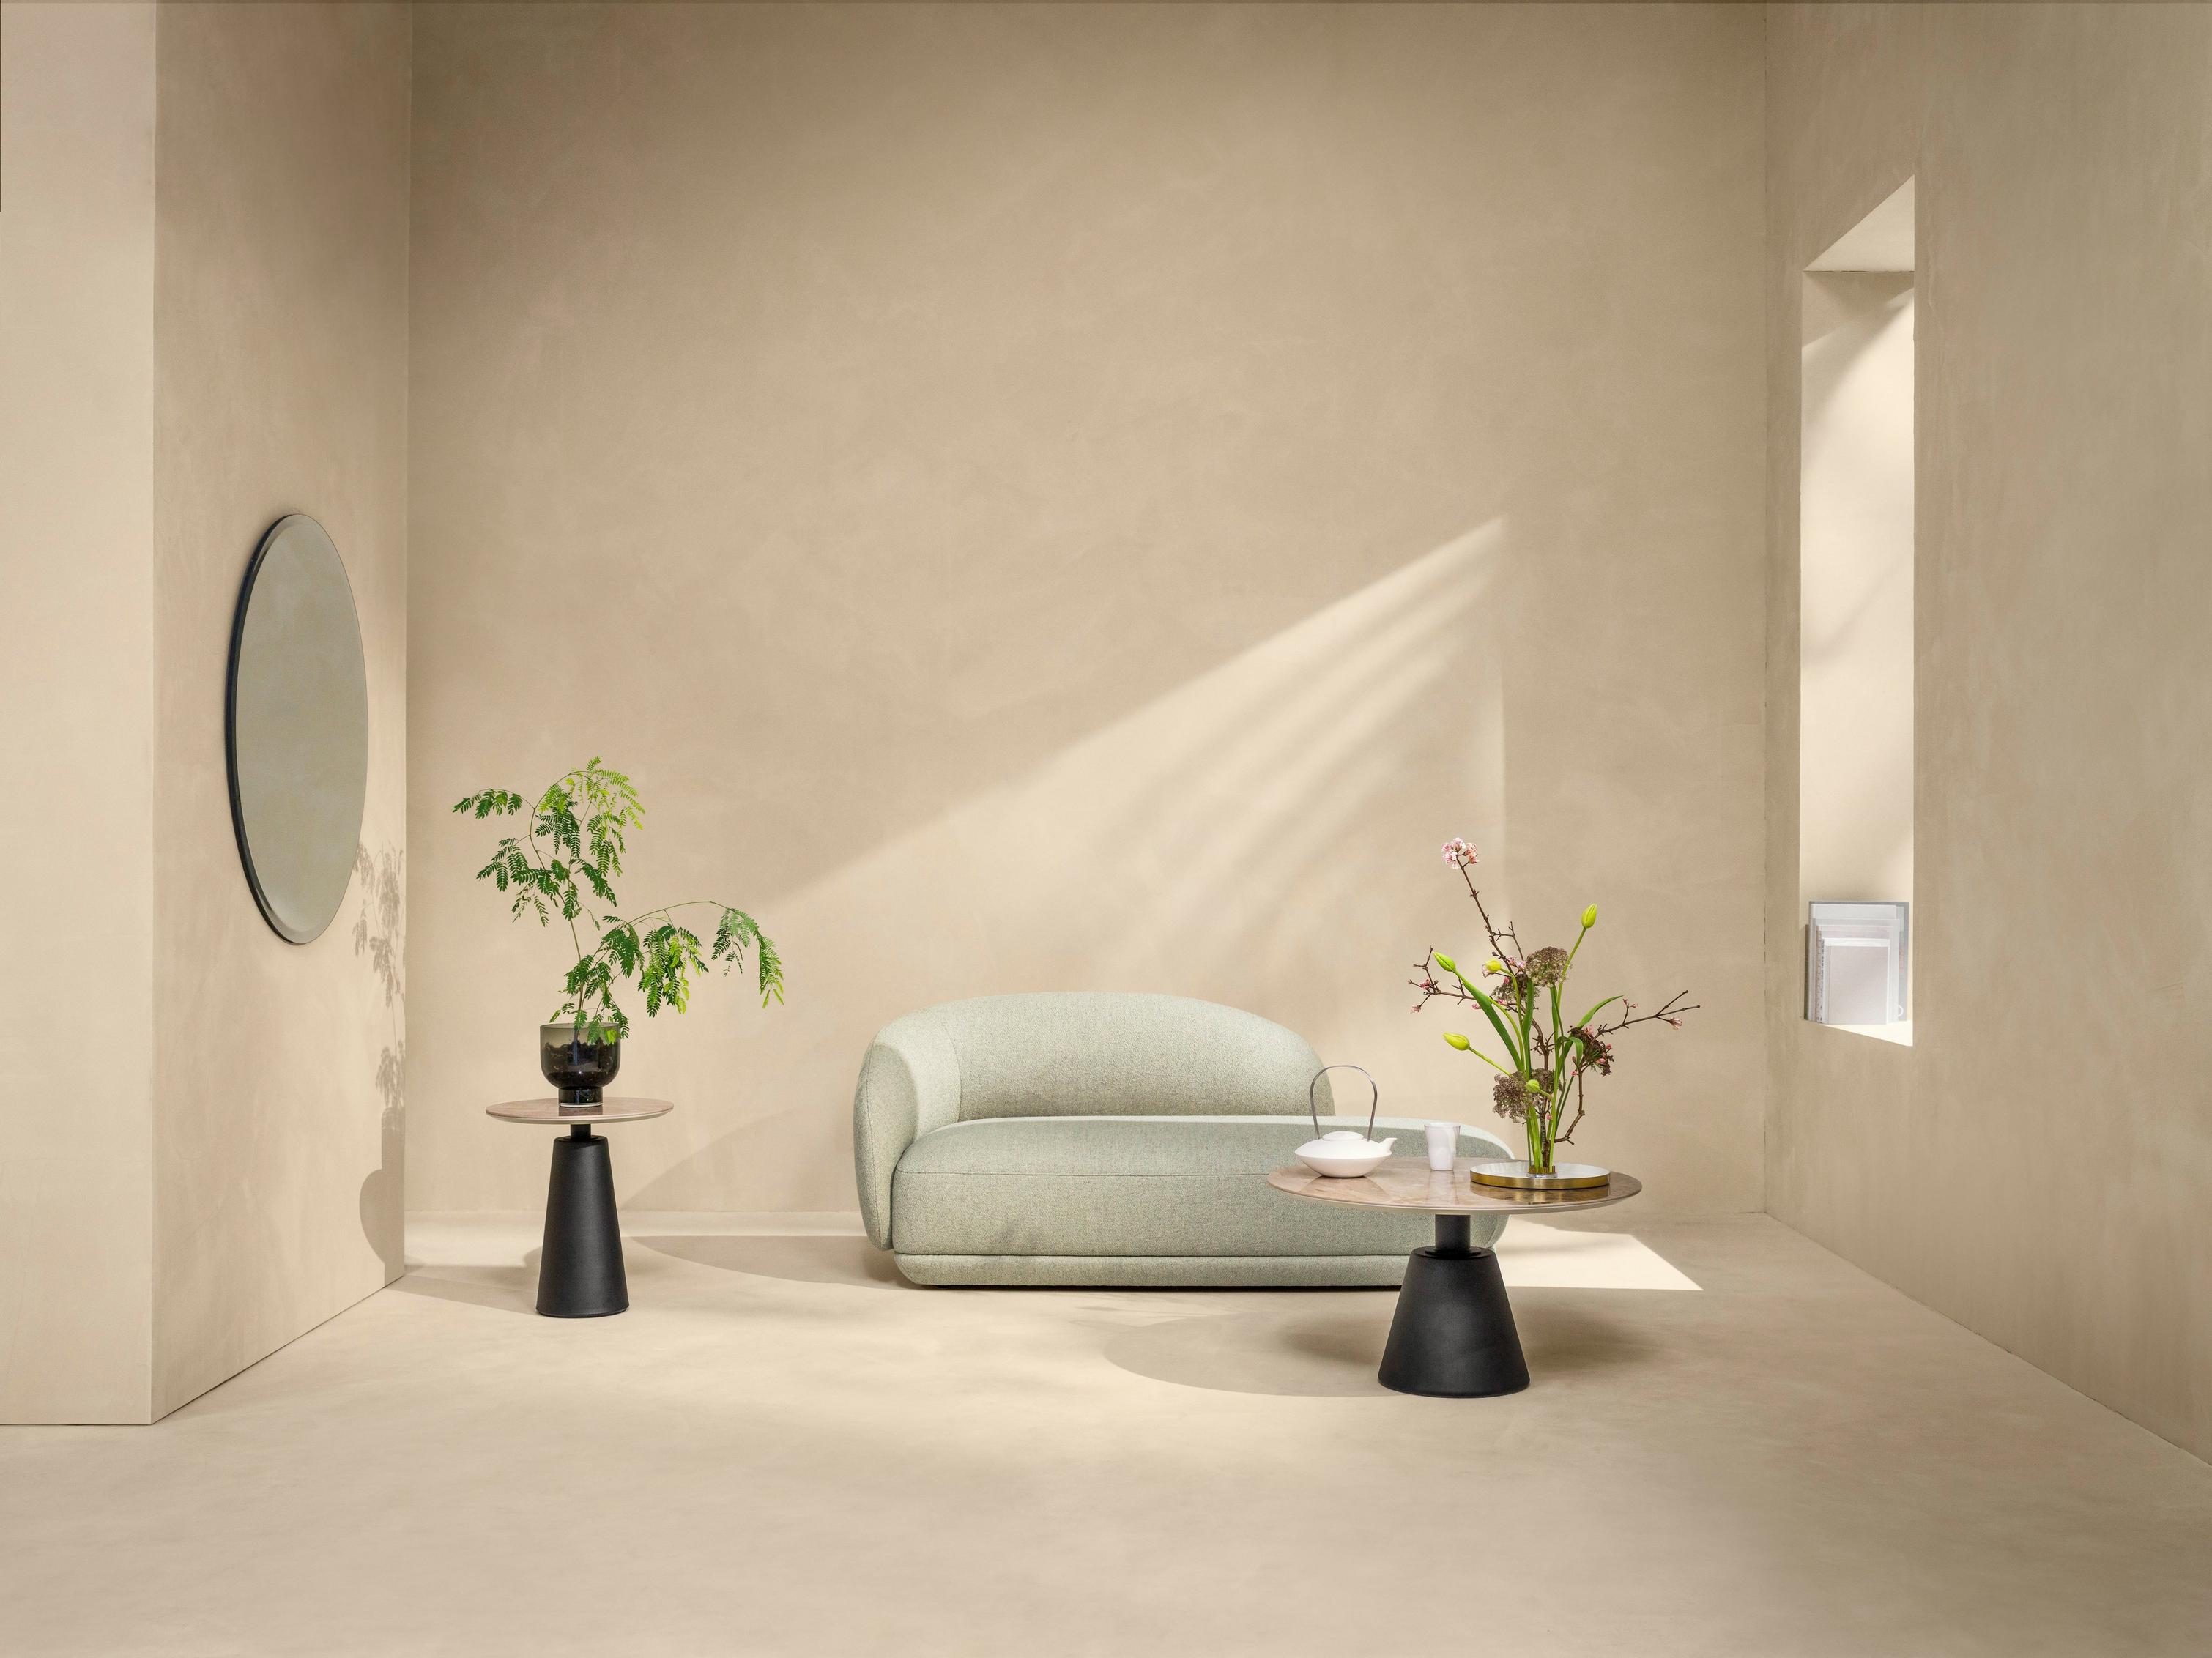 Элегантная гостиная с диваном-кушеткой Bolzano с обивкой из ткани Lazio светло-зеленого цвета.